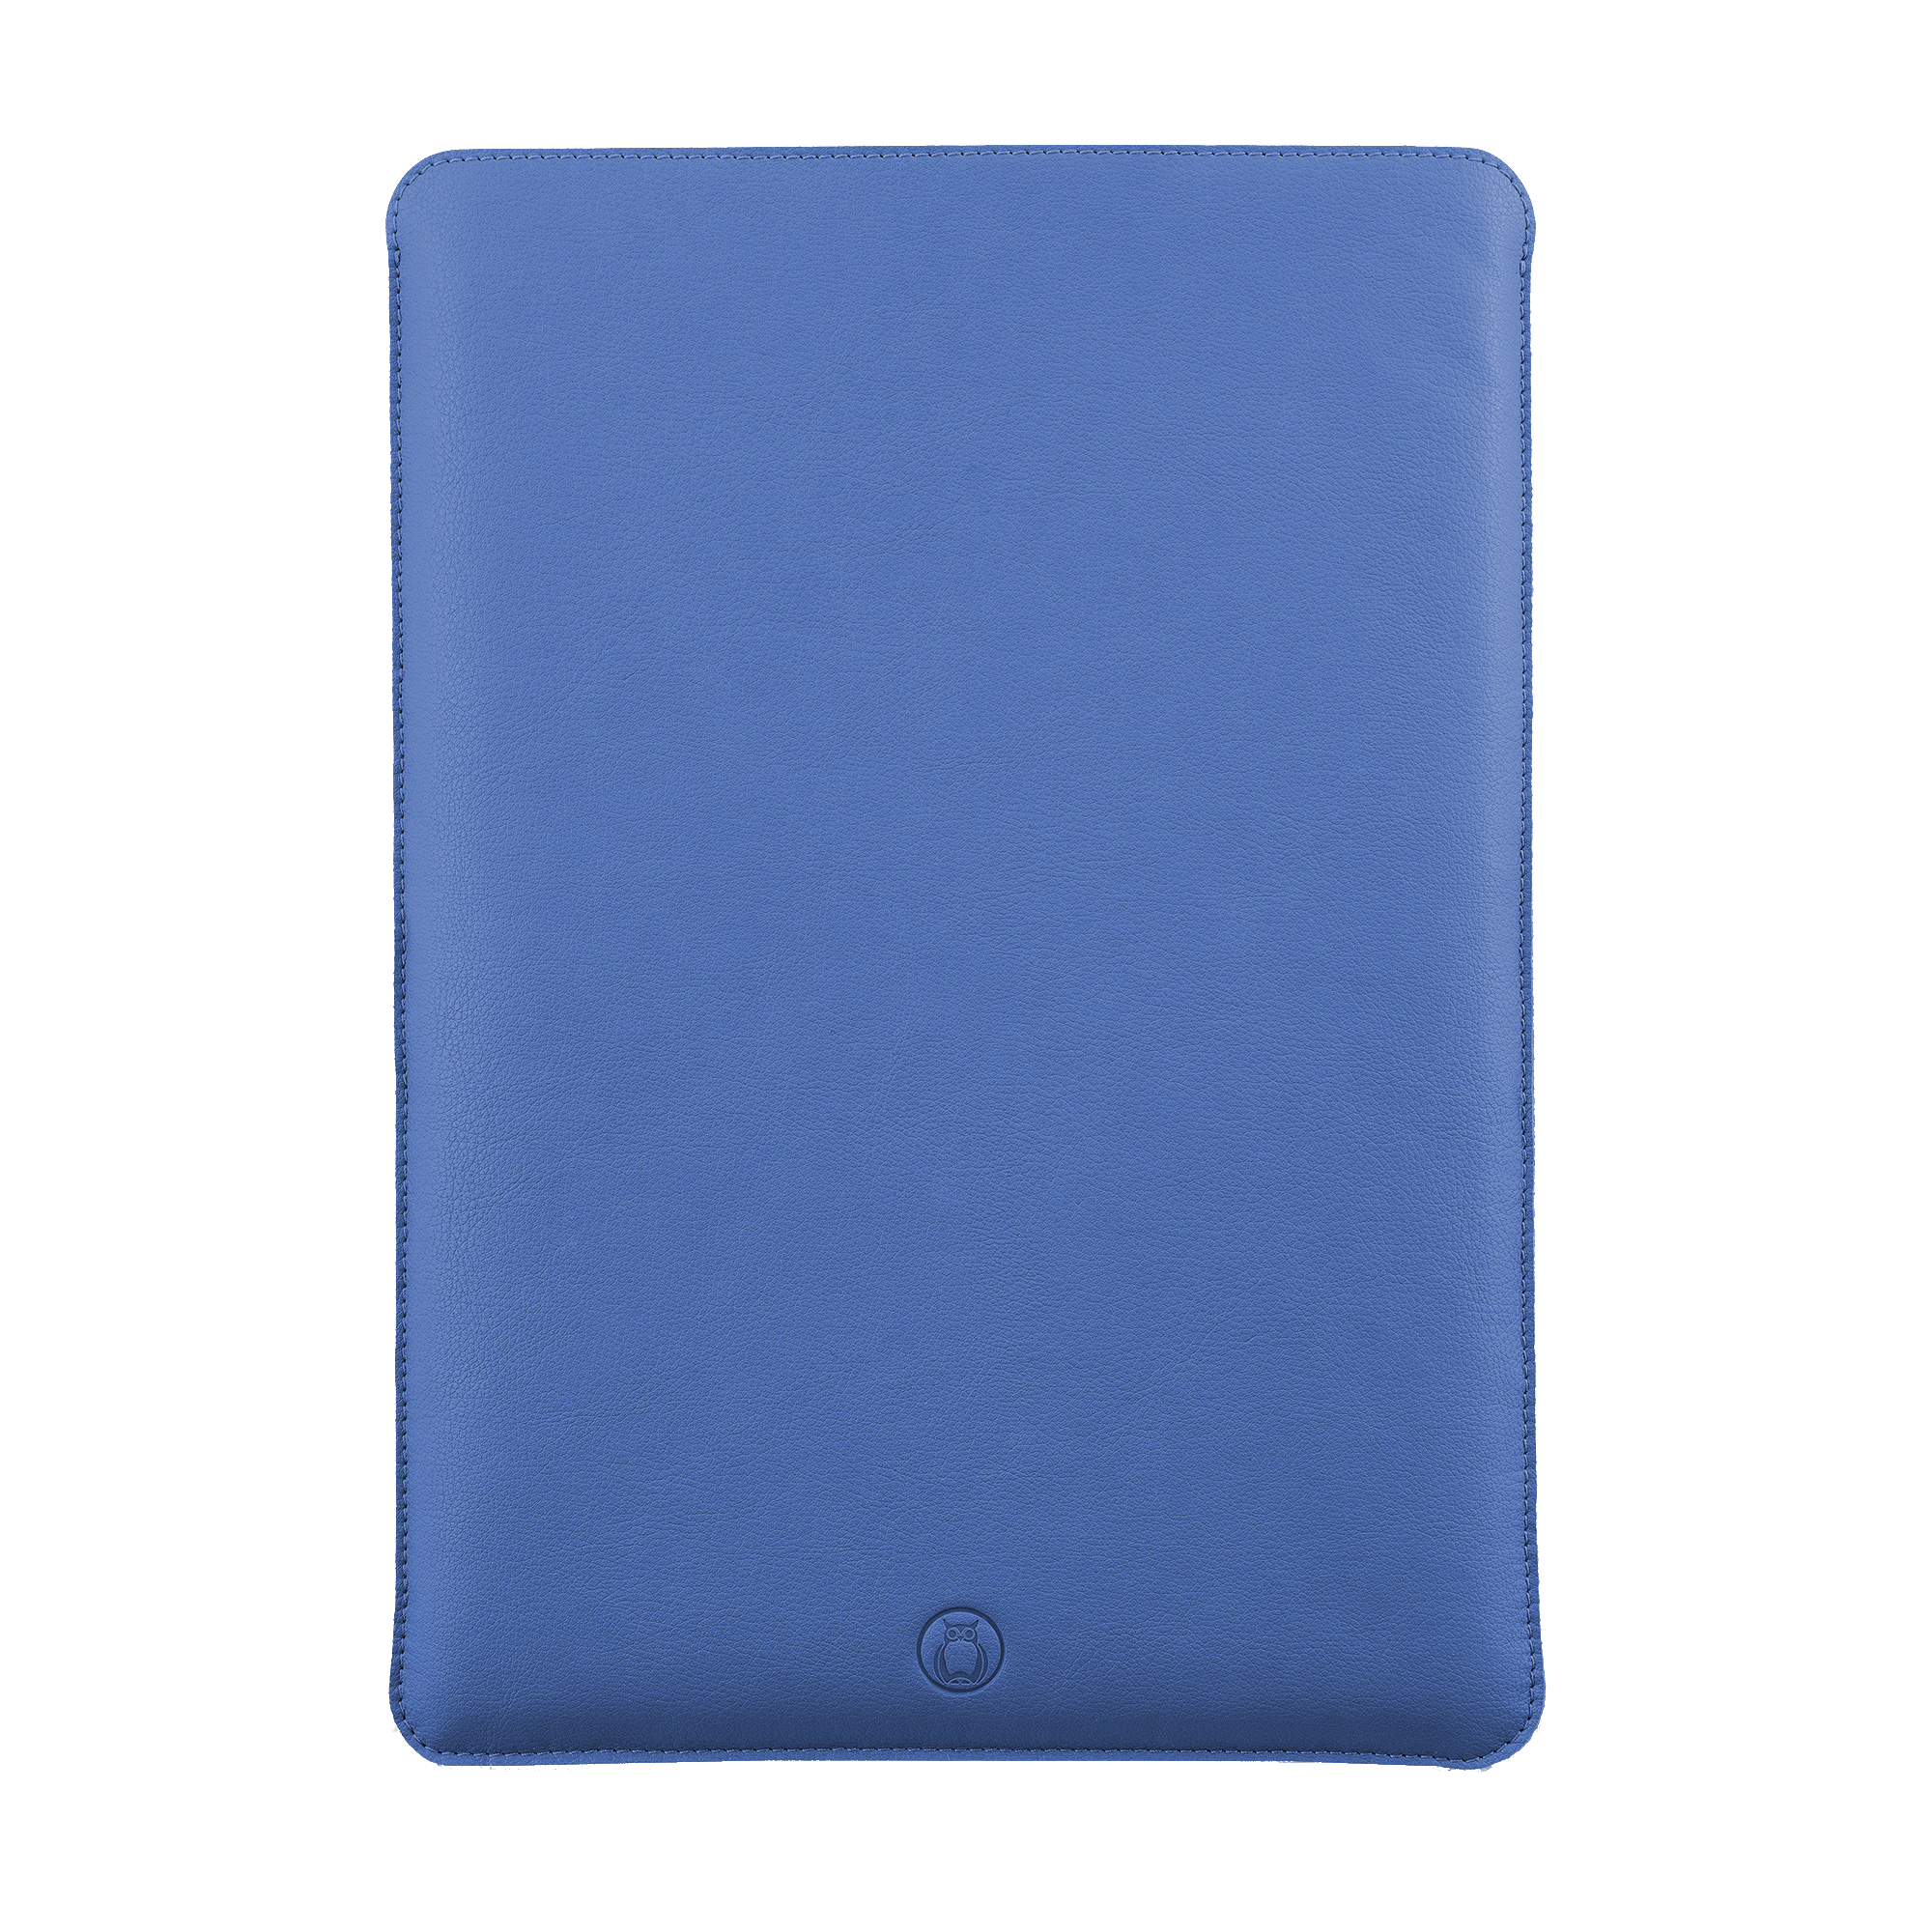 Husa laptop MacBook 13 inch UNIKA piele PU cu lana din fibre naturale albastru sanito.ro imagine model 2022